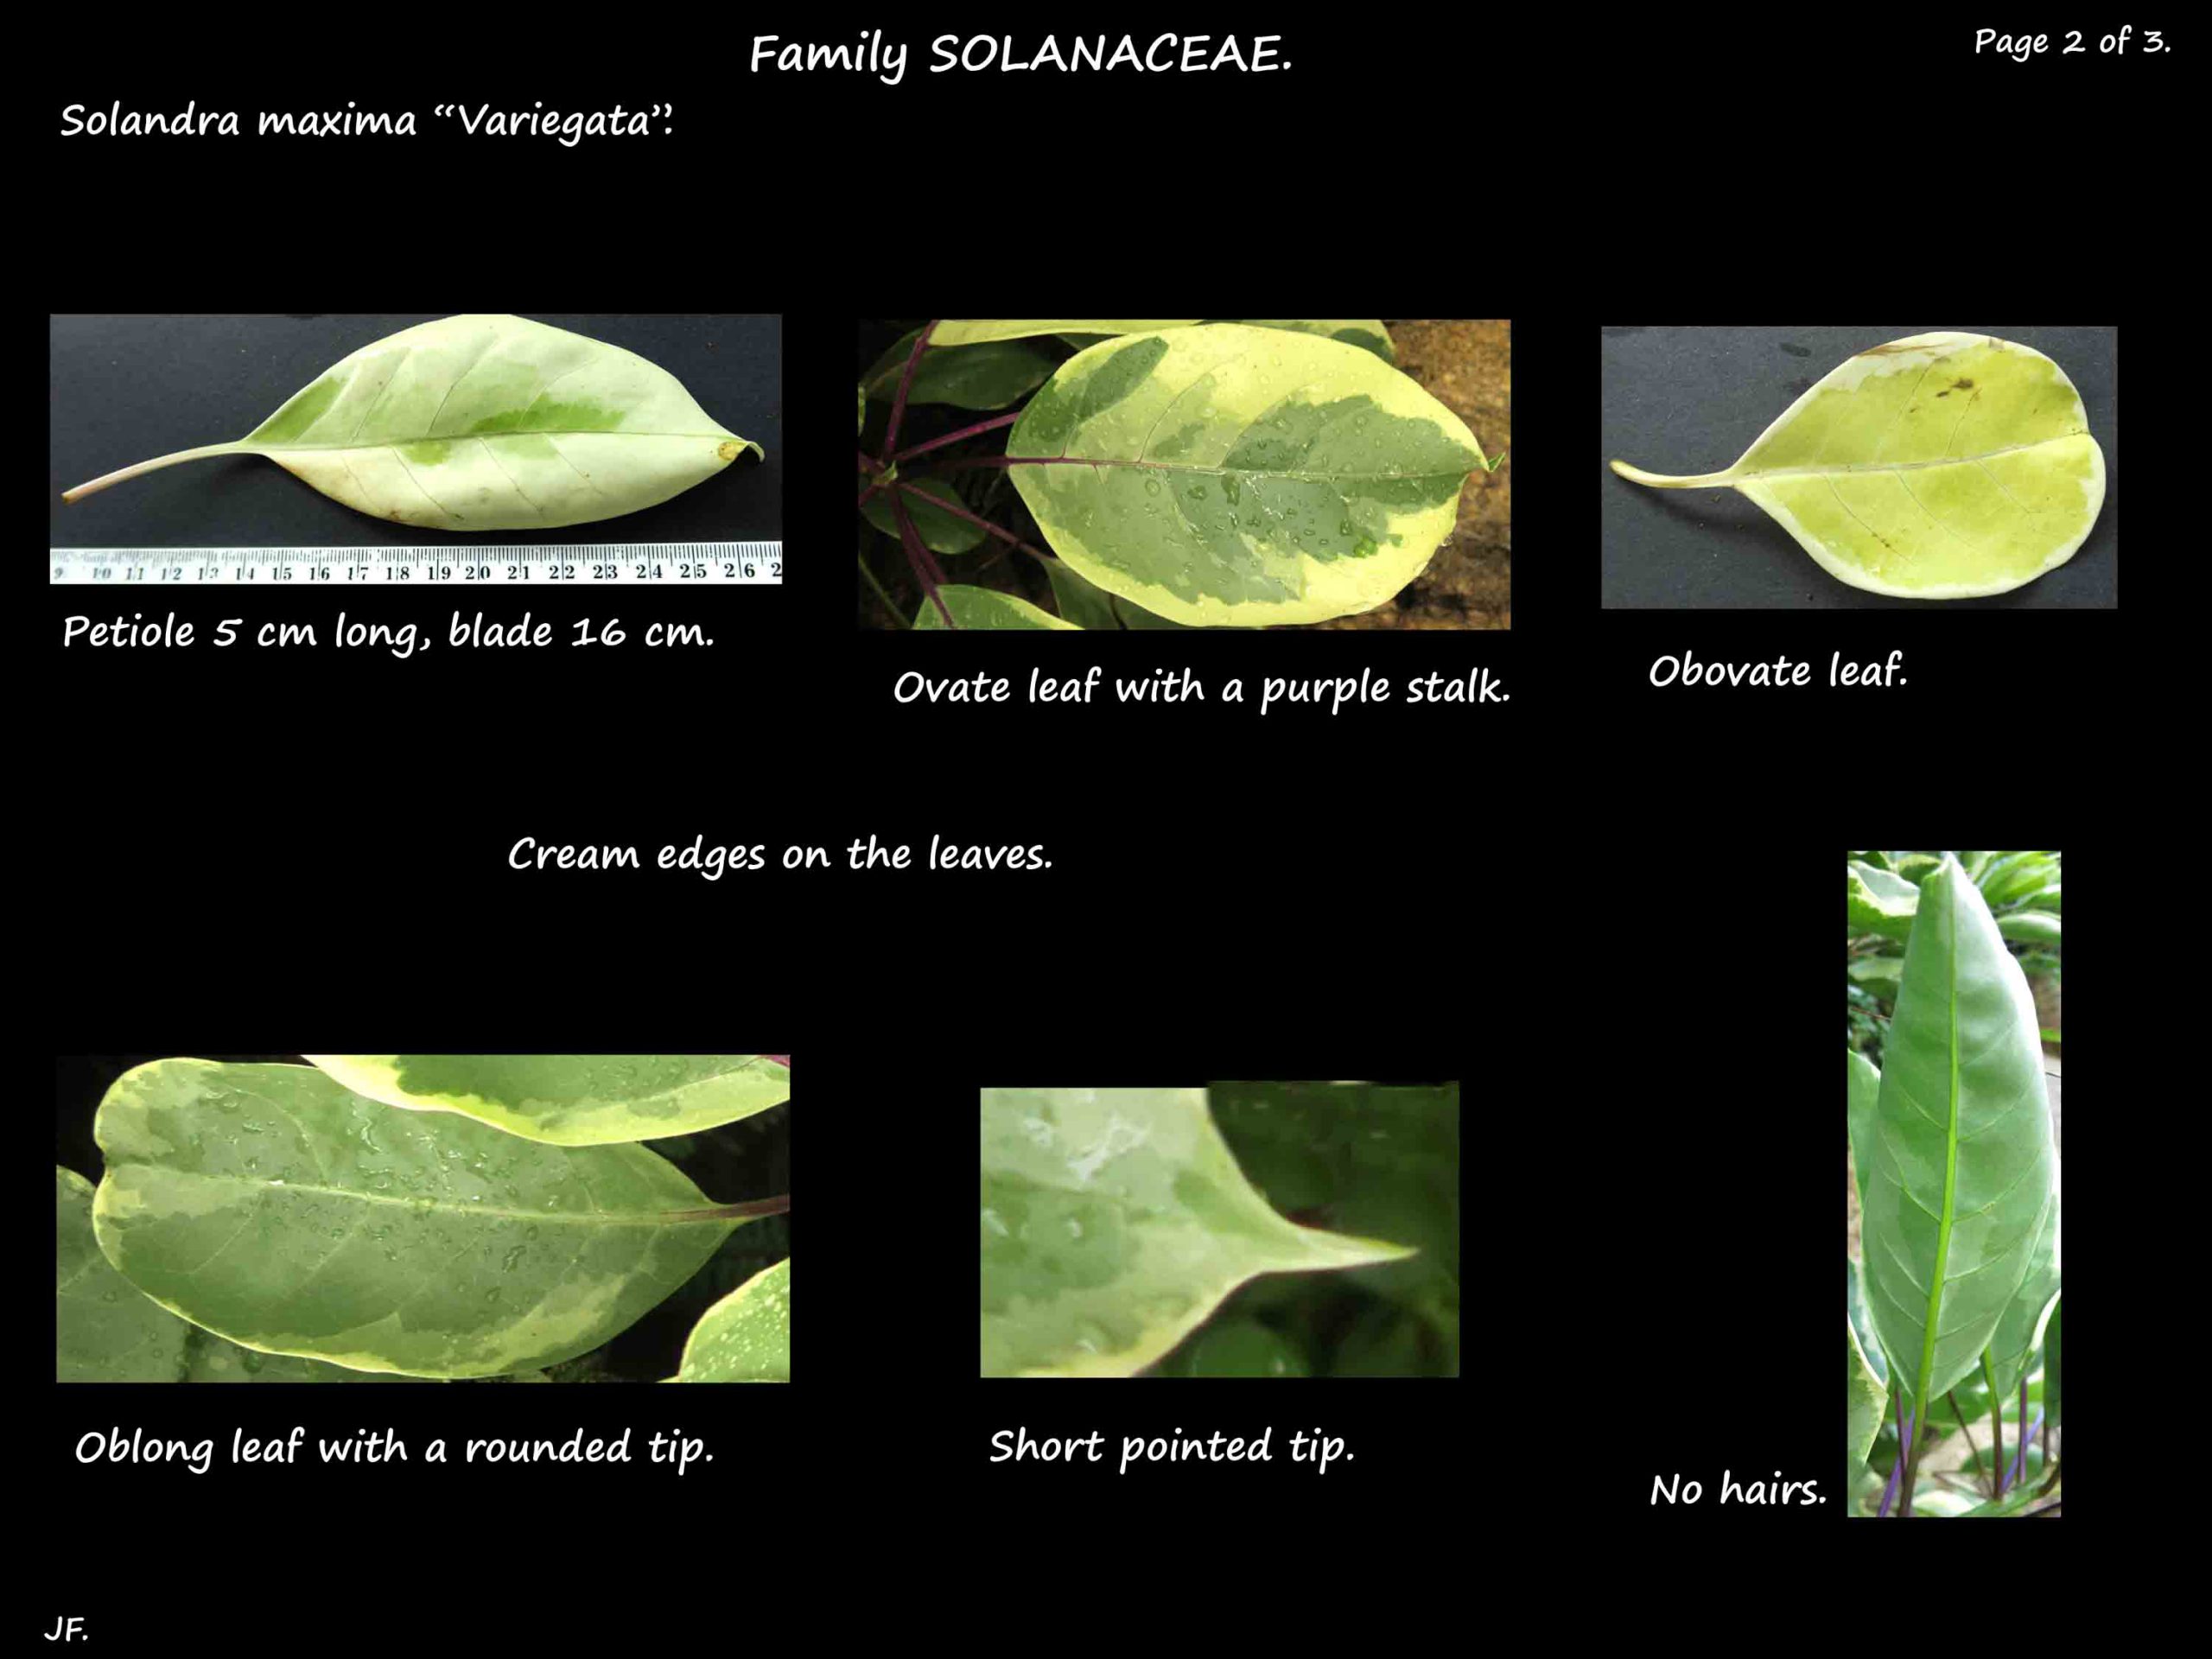 2 Solandra 'Variegata' leaves